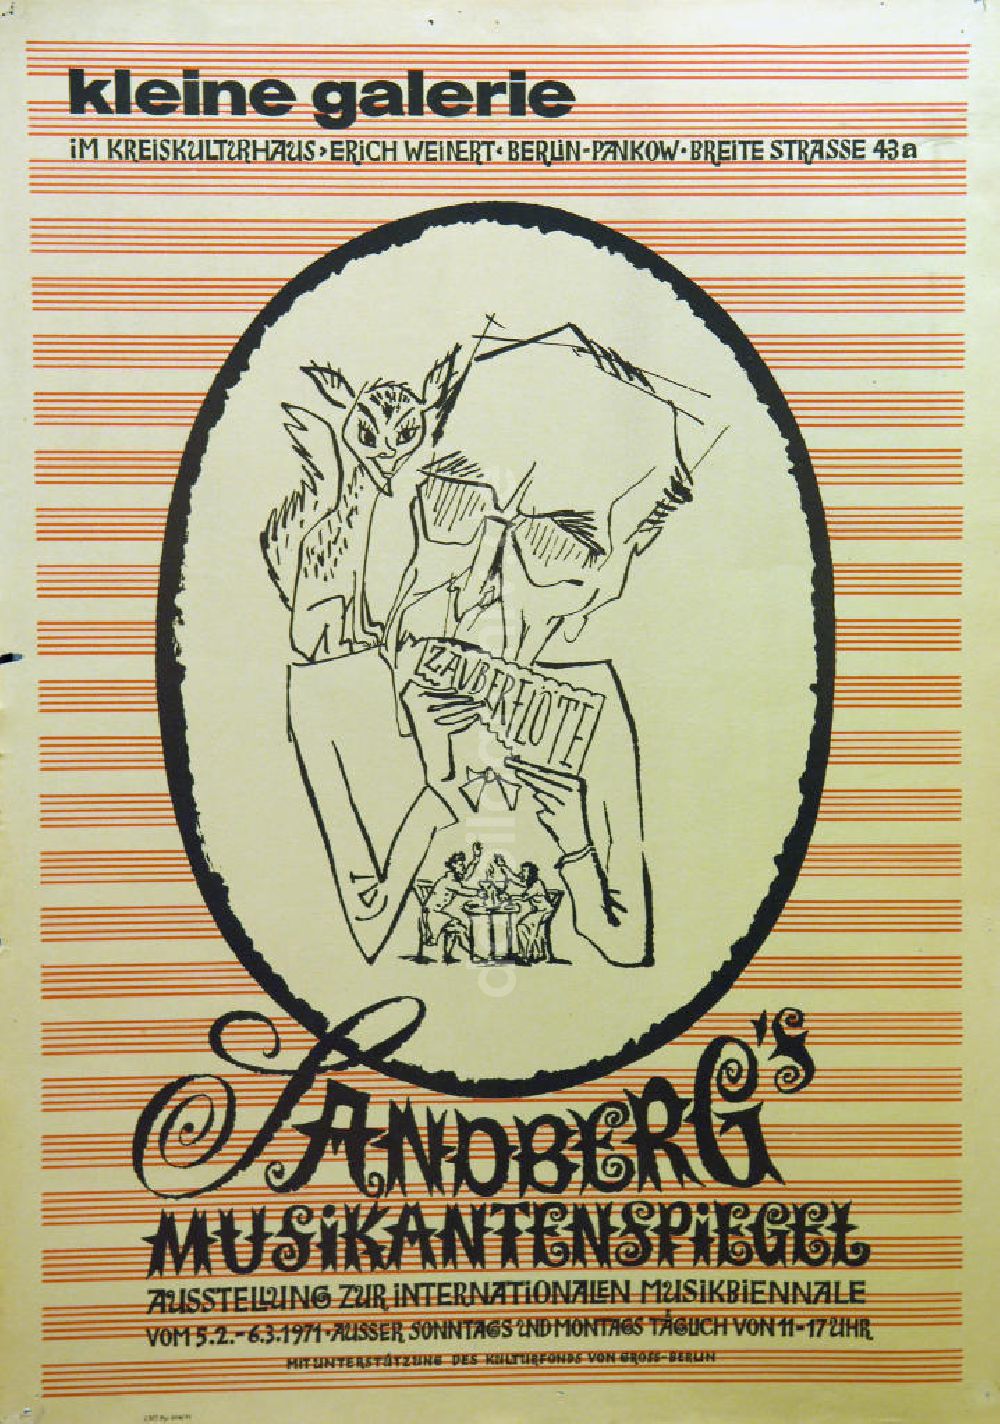 Berlin: Plakat von der Ausstellung Sandberg's Musikantenspiegel über Herbert Sandberg aus dem Jahr 1971